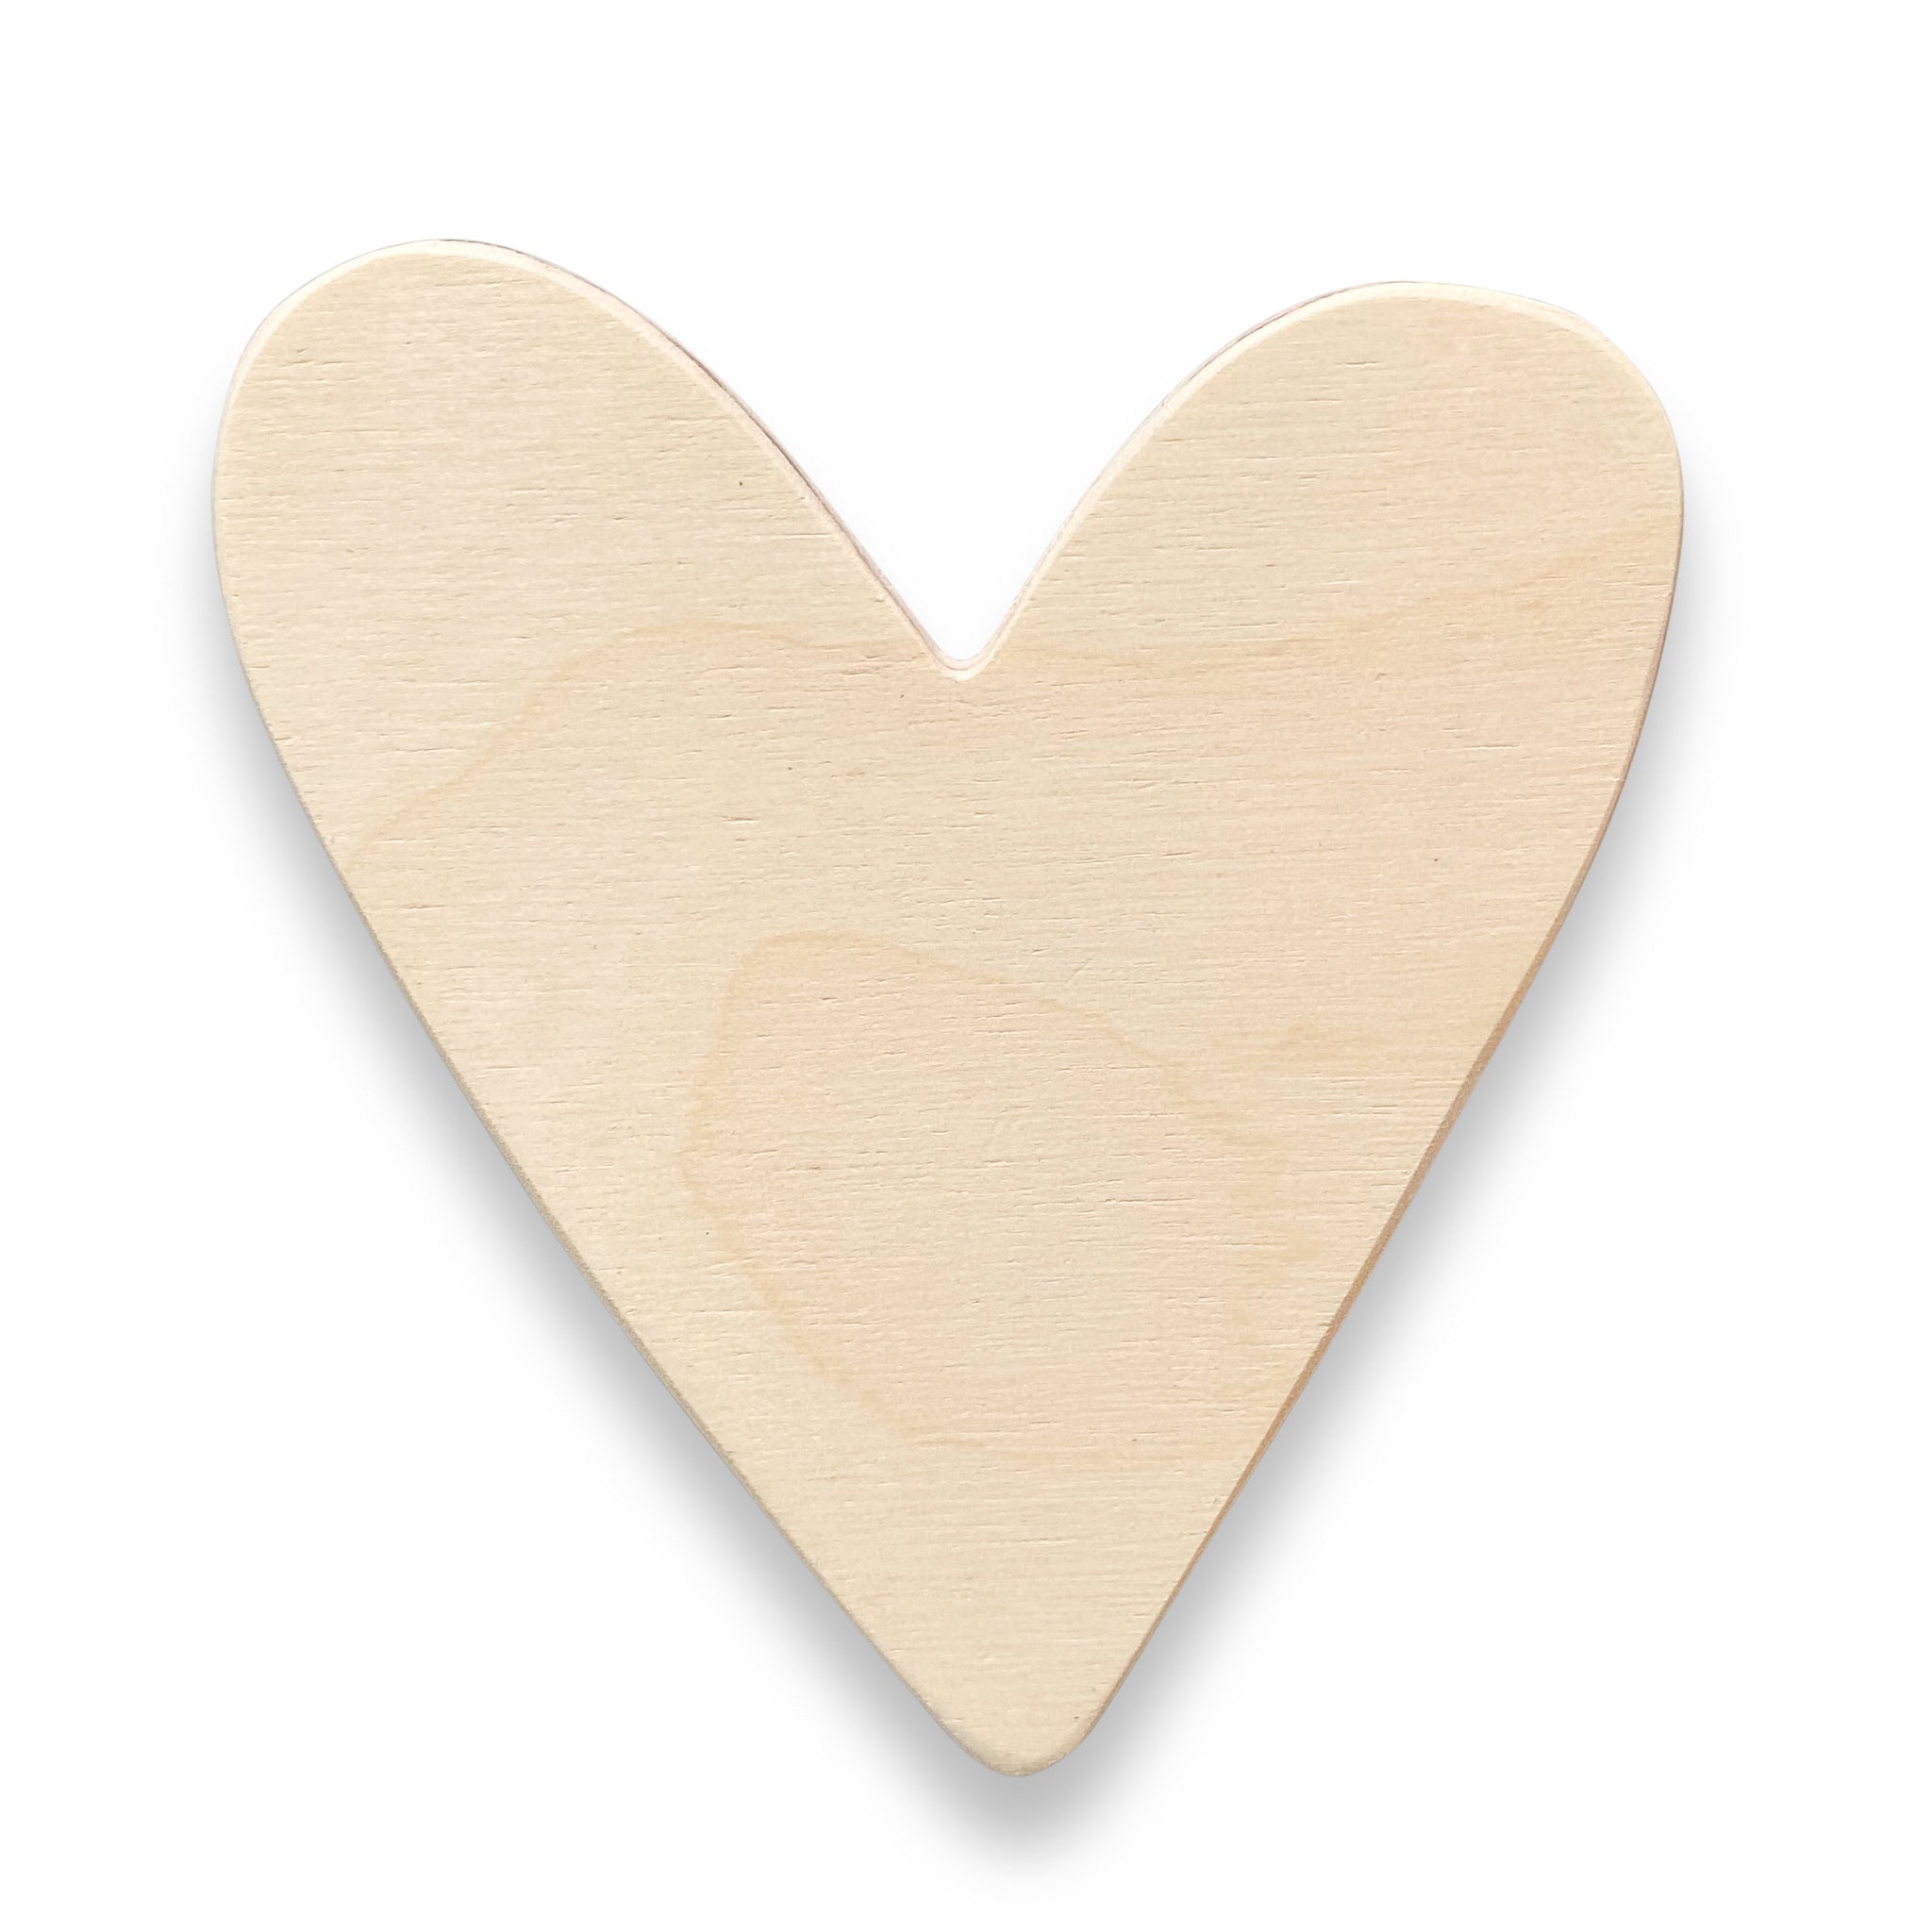 Drewniany wieszak ścienny do pokoju dziecięcego | Tęcza i serce